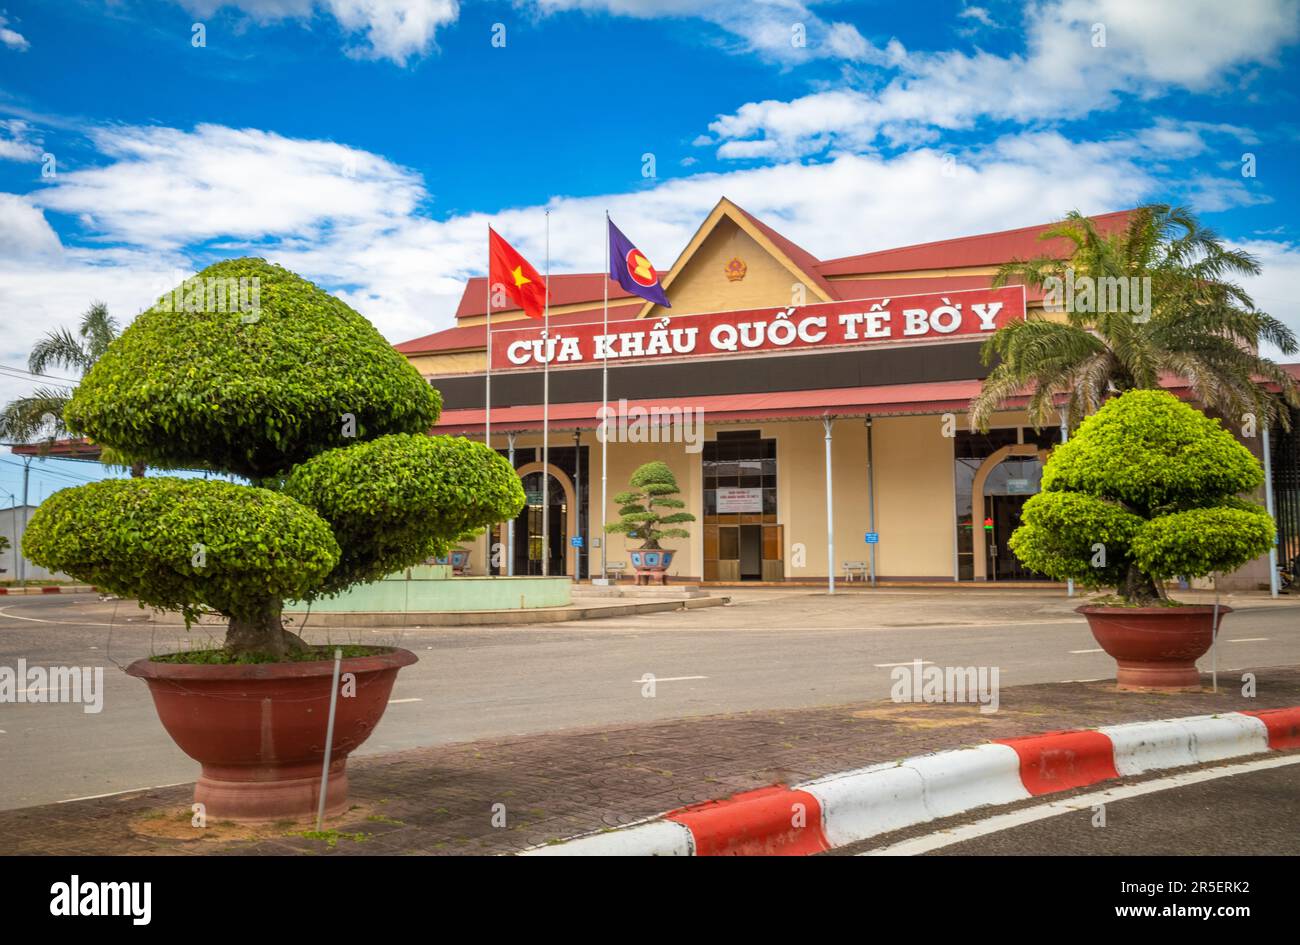 Buissons topiaires à côté du bâtiment abritant la porte de la frontière internationale Vietnam-Laos à Bo y, district de Ngoc Hoi, province de Kontum, dans le Central Hig Banque D'Images